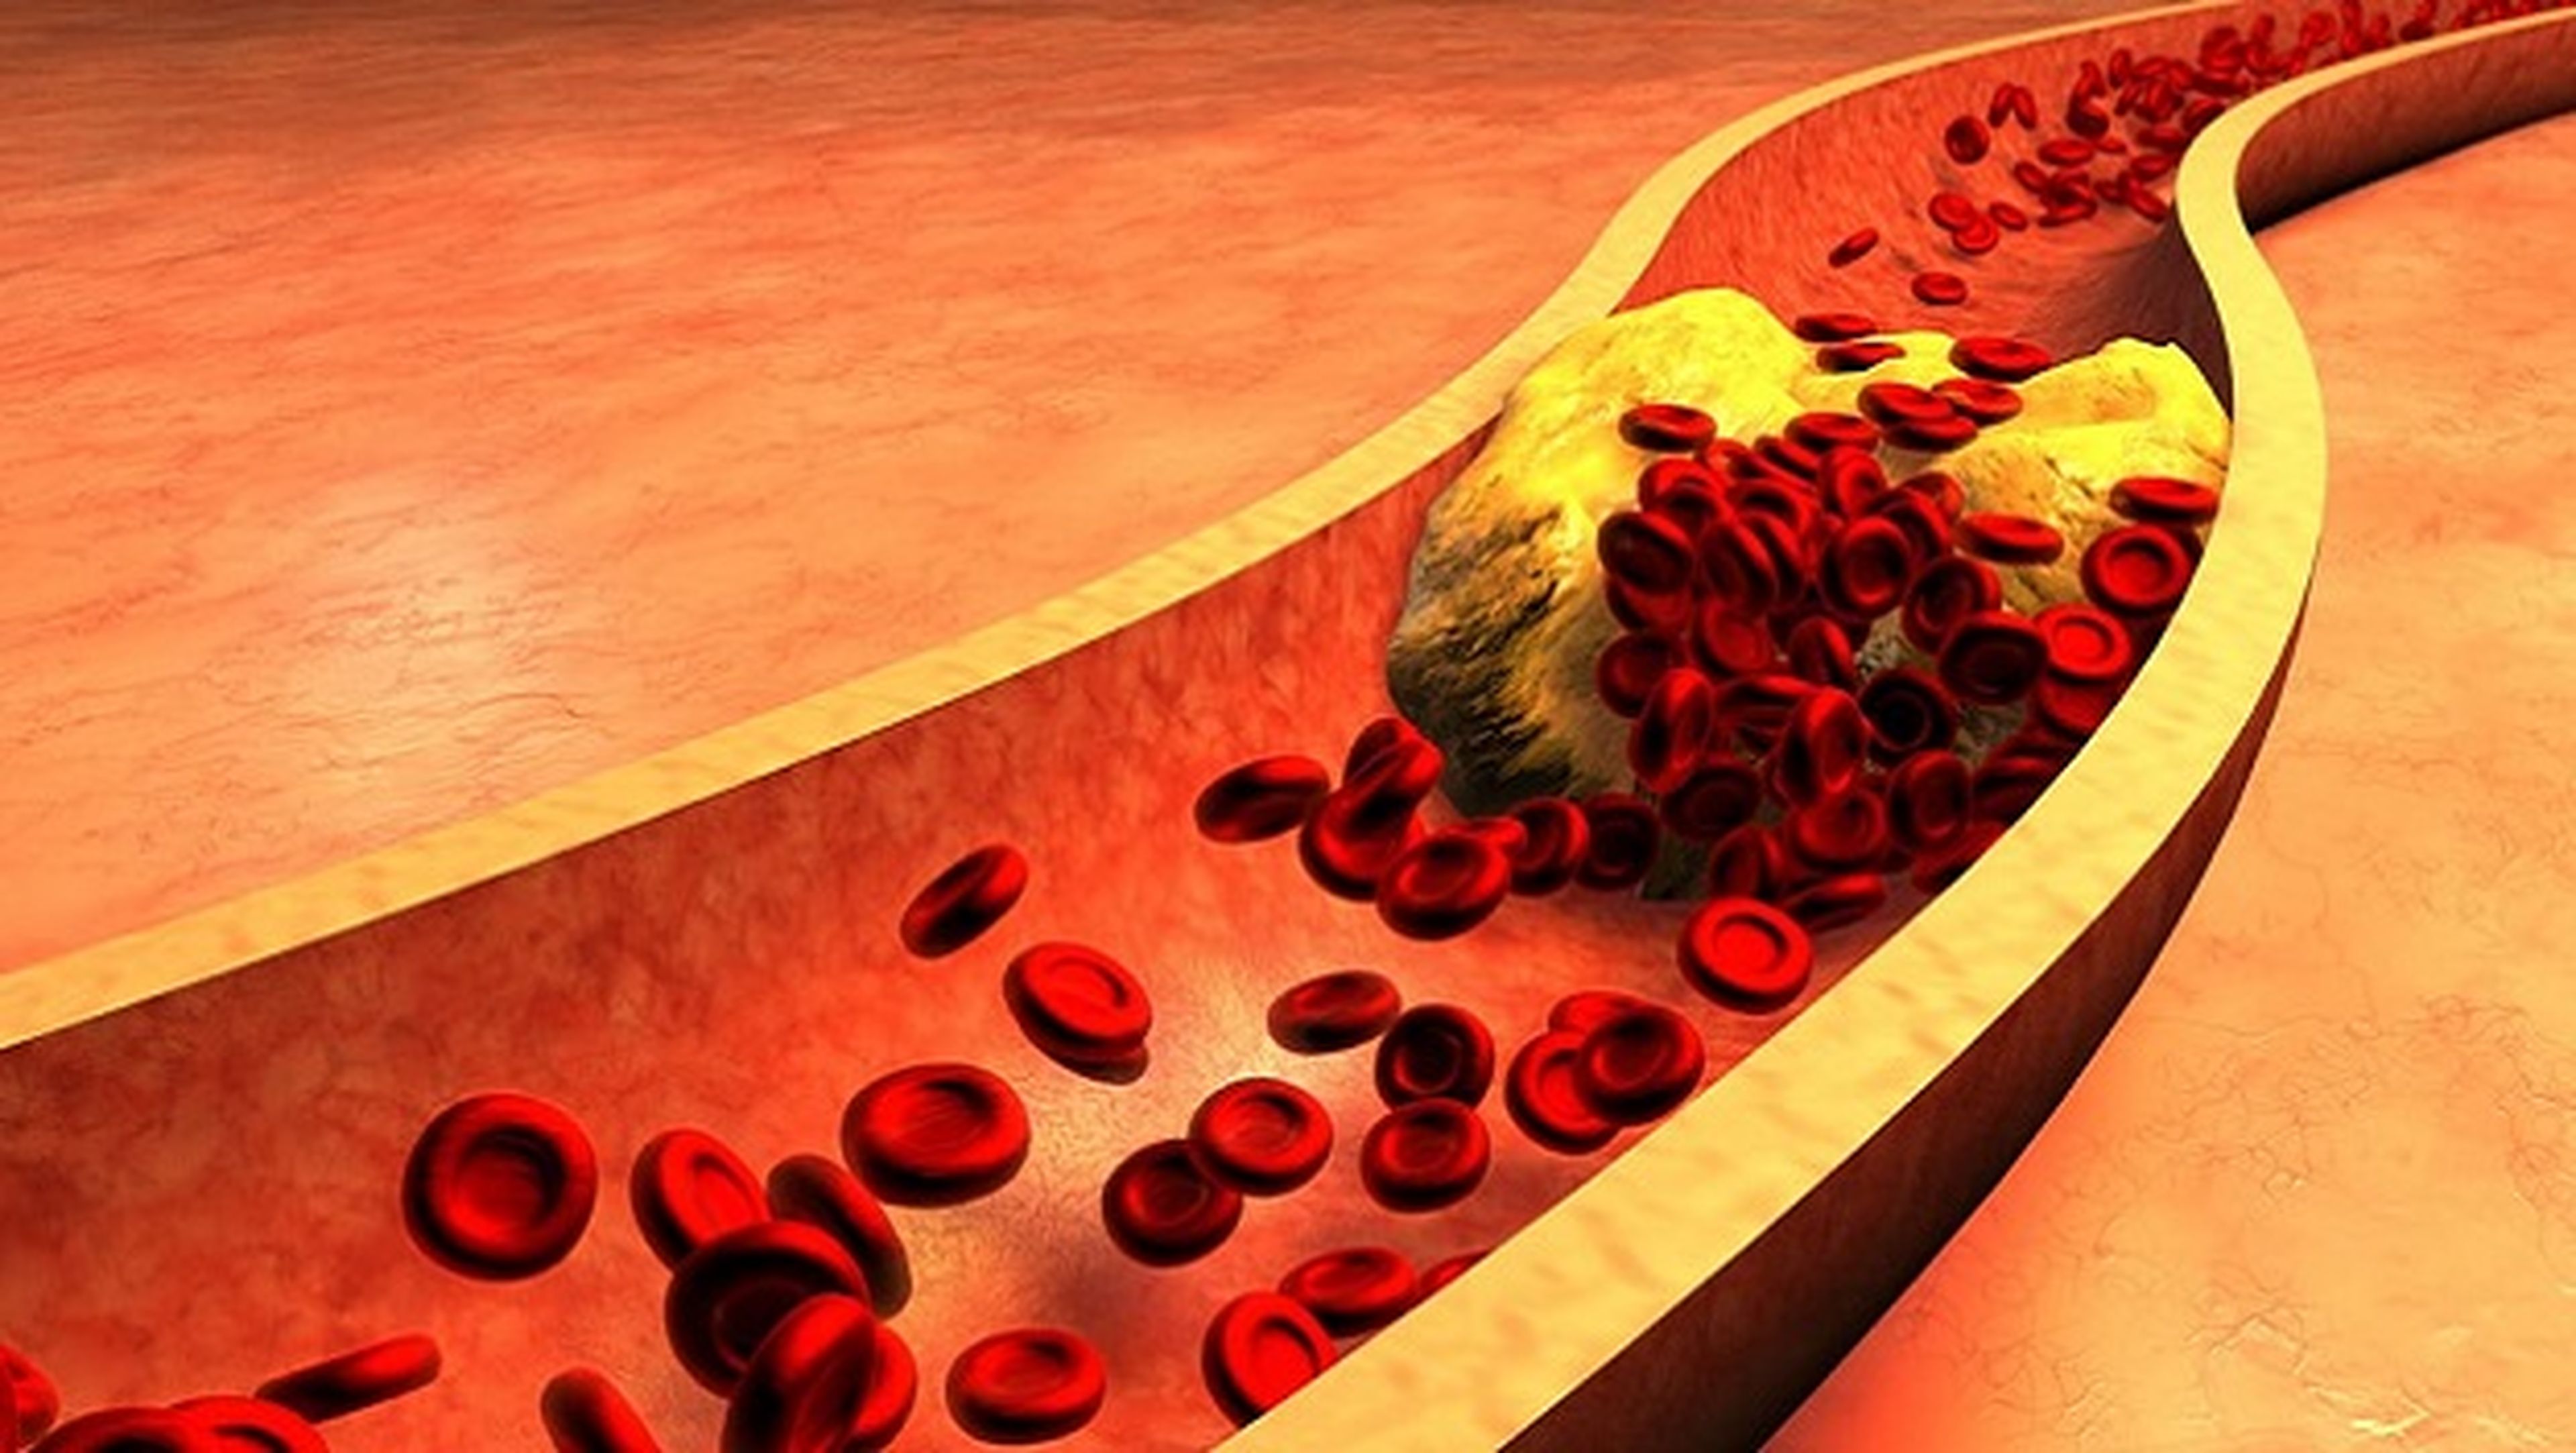 Microcámara transmite en vivo del interior de arterias